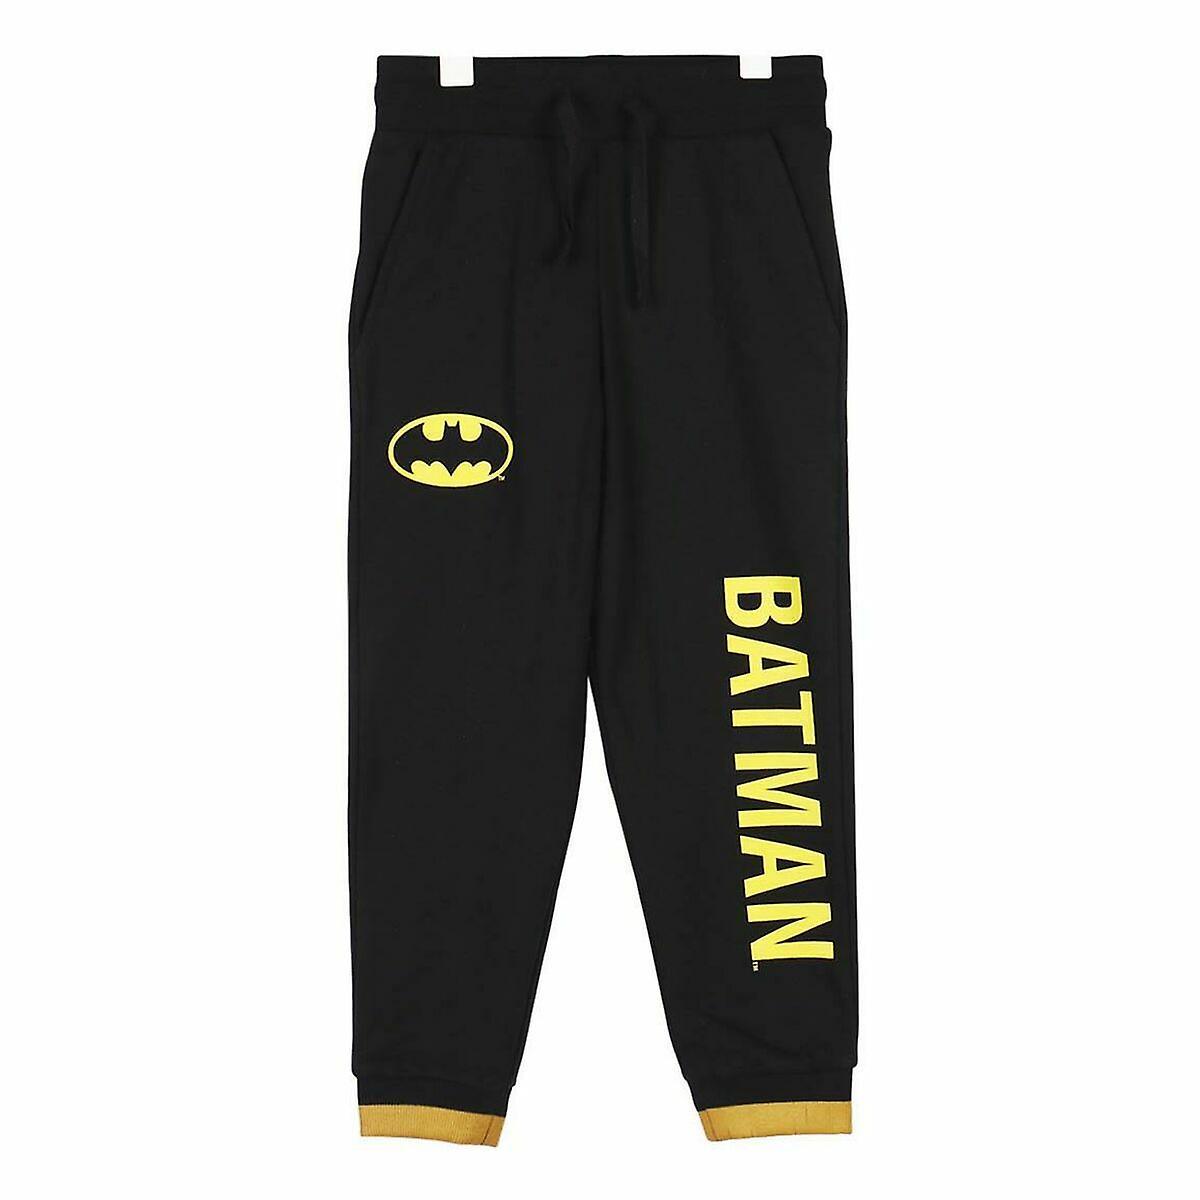 Pantaloni tuta bambino - DC Batman - Magic Dreams Store